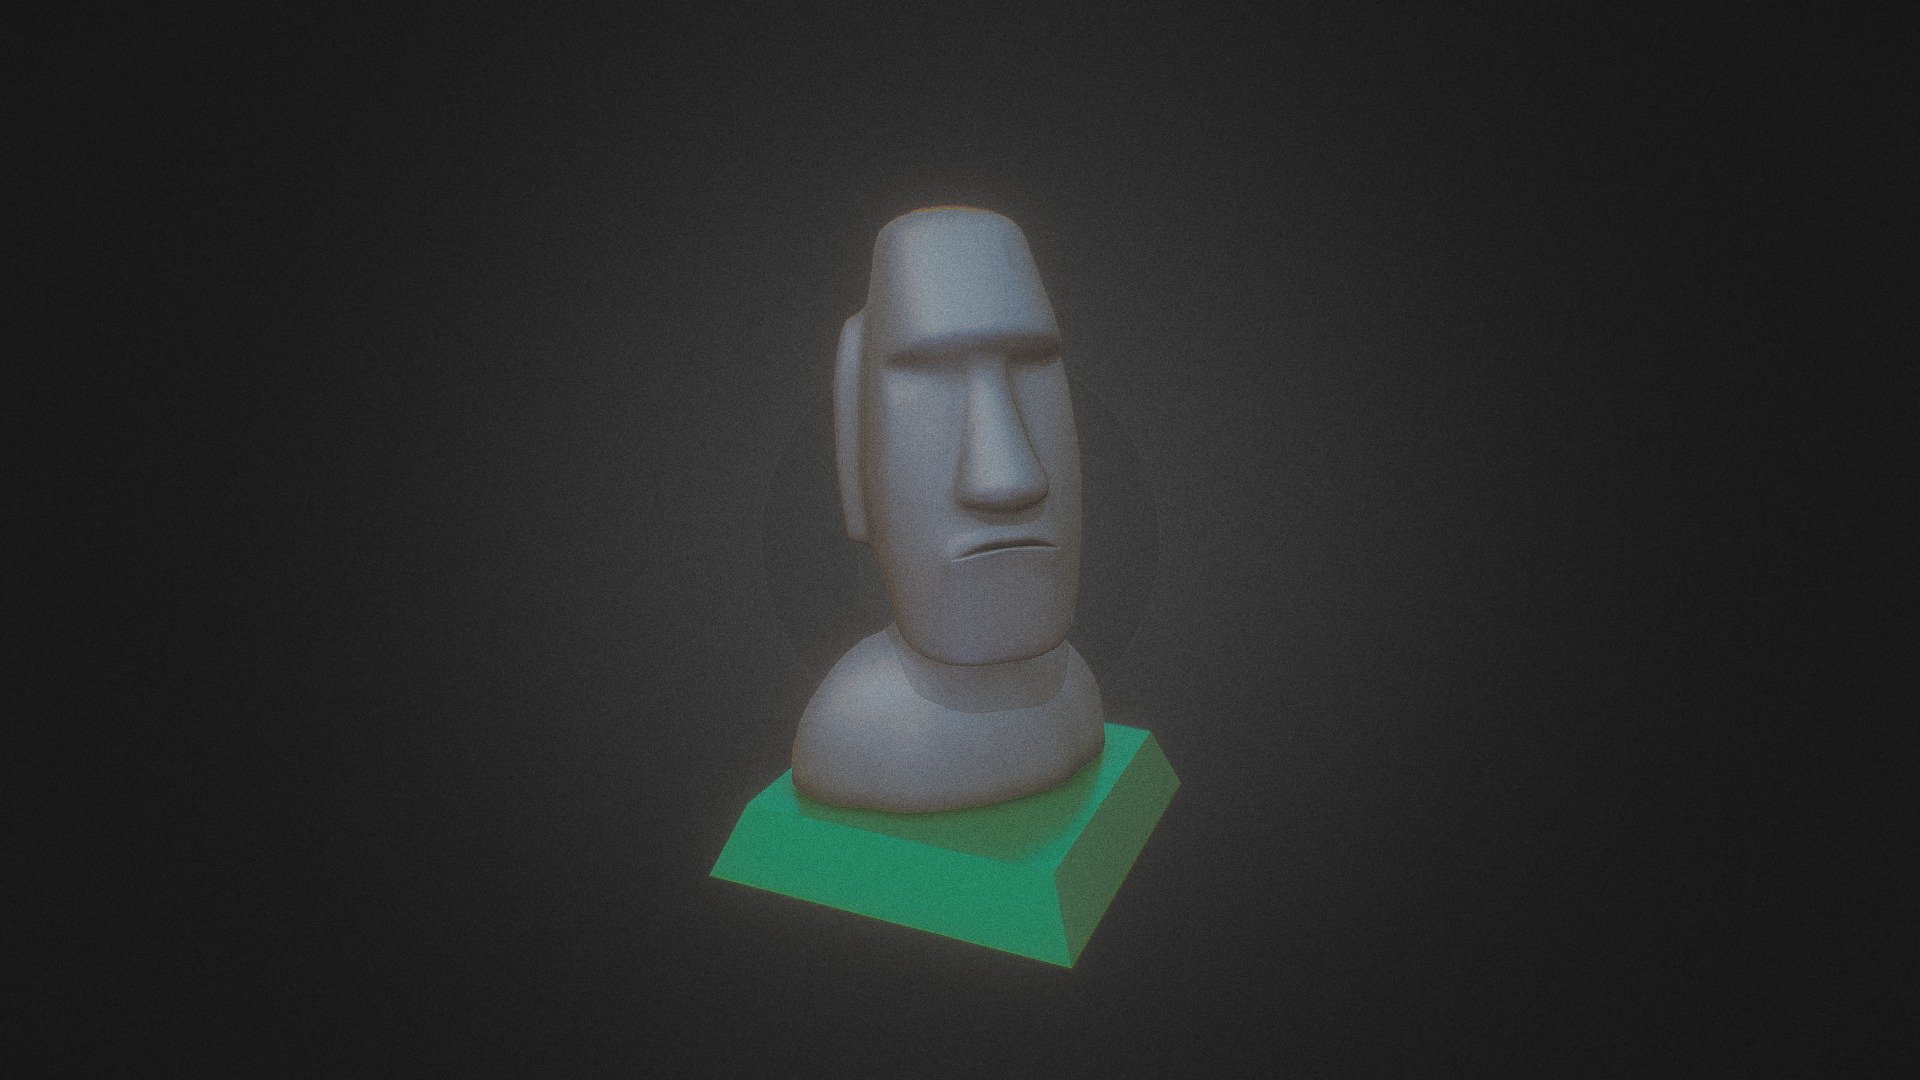 Moai 3D models - Sketchfab